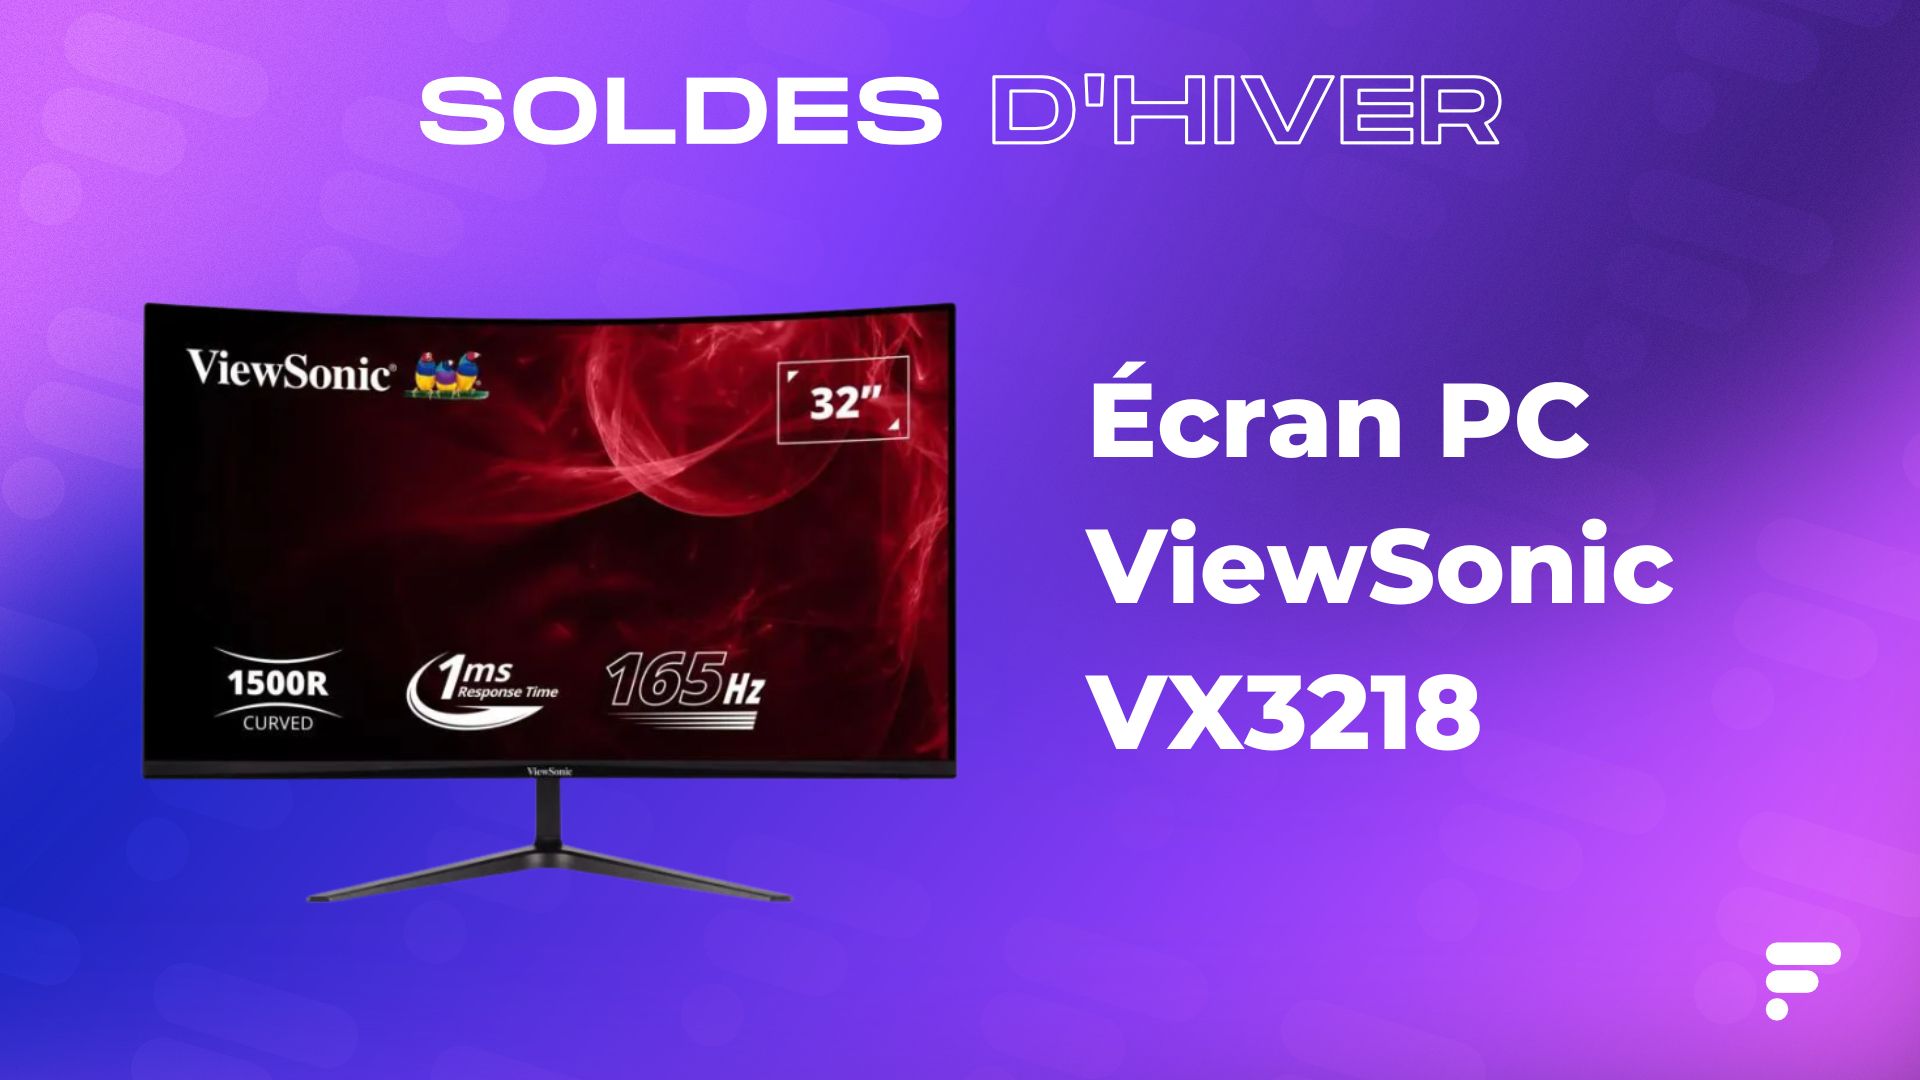 Ecran PC Gamer Incurvé - VIEWSONIC VX3218 - PC - MHD - 32 FHD